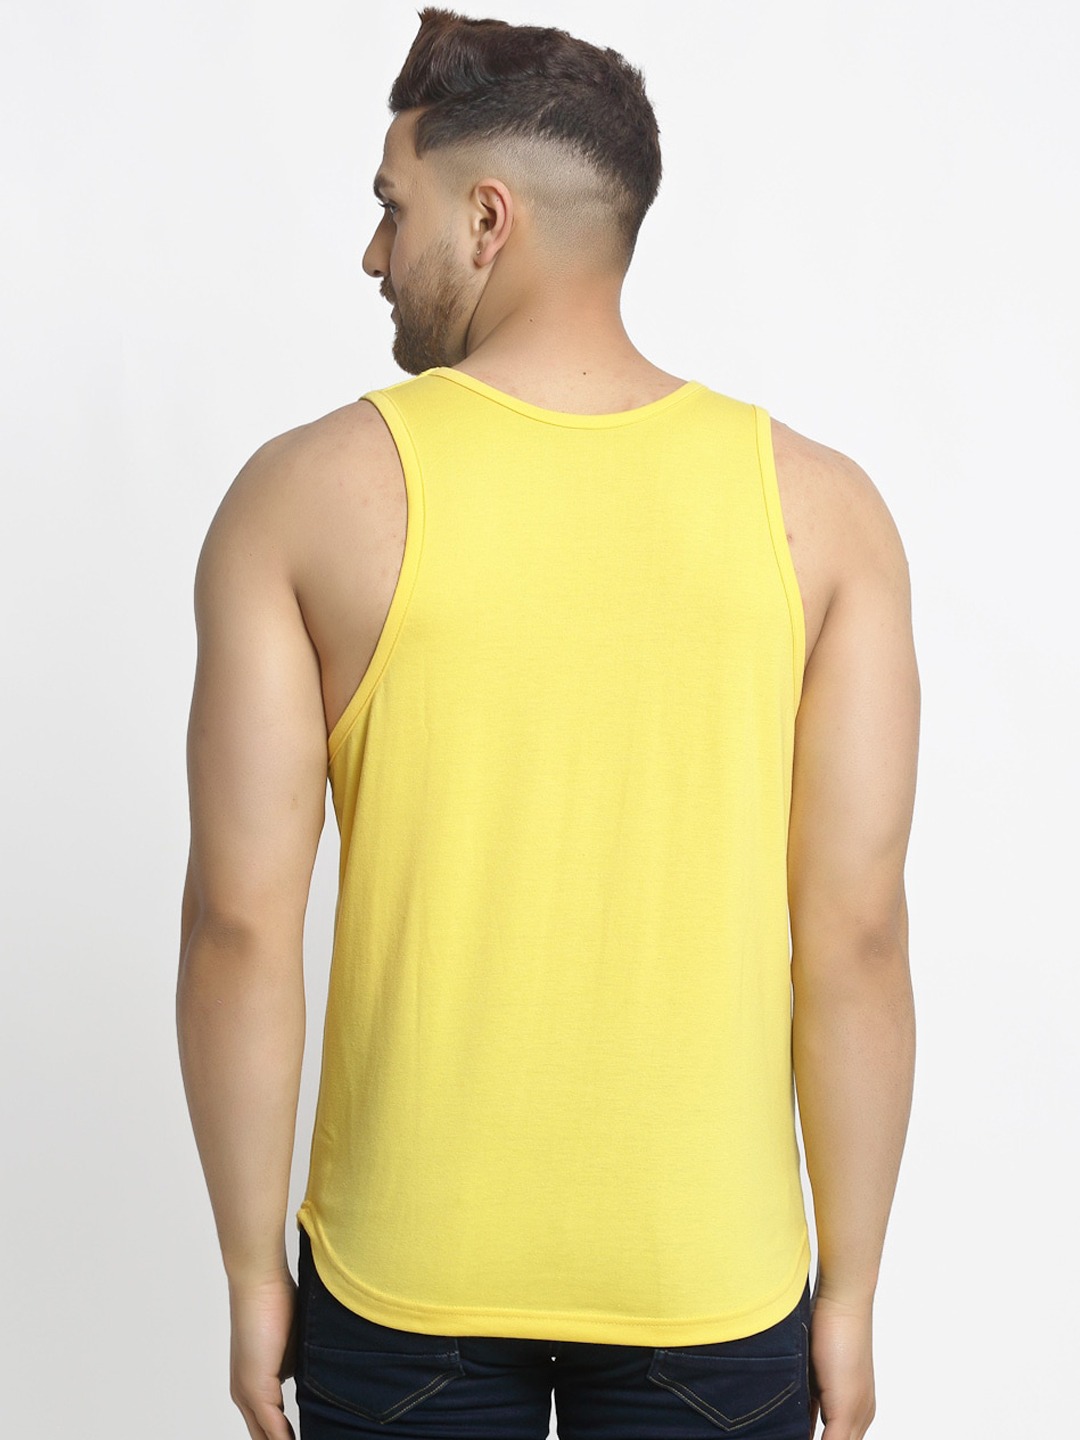 Clothing Innerwear Vests | Friskers Men Pack Of 2 Solid Apple Cut Gym Vests - YG81025